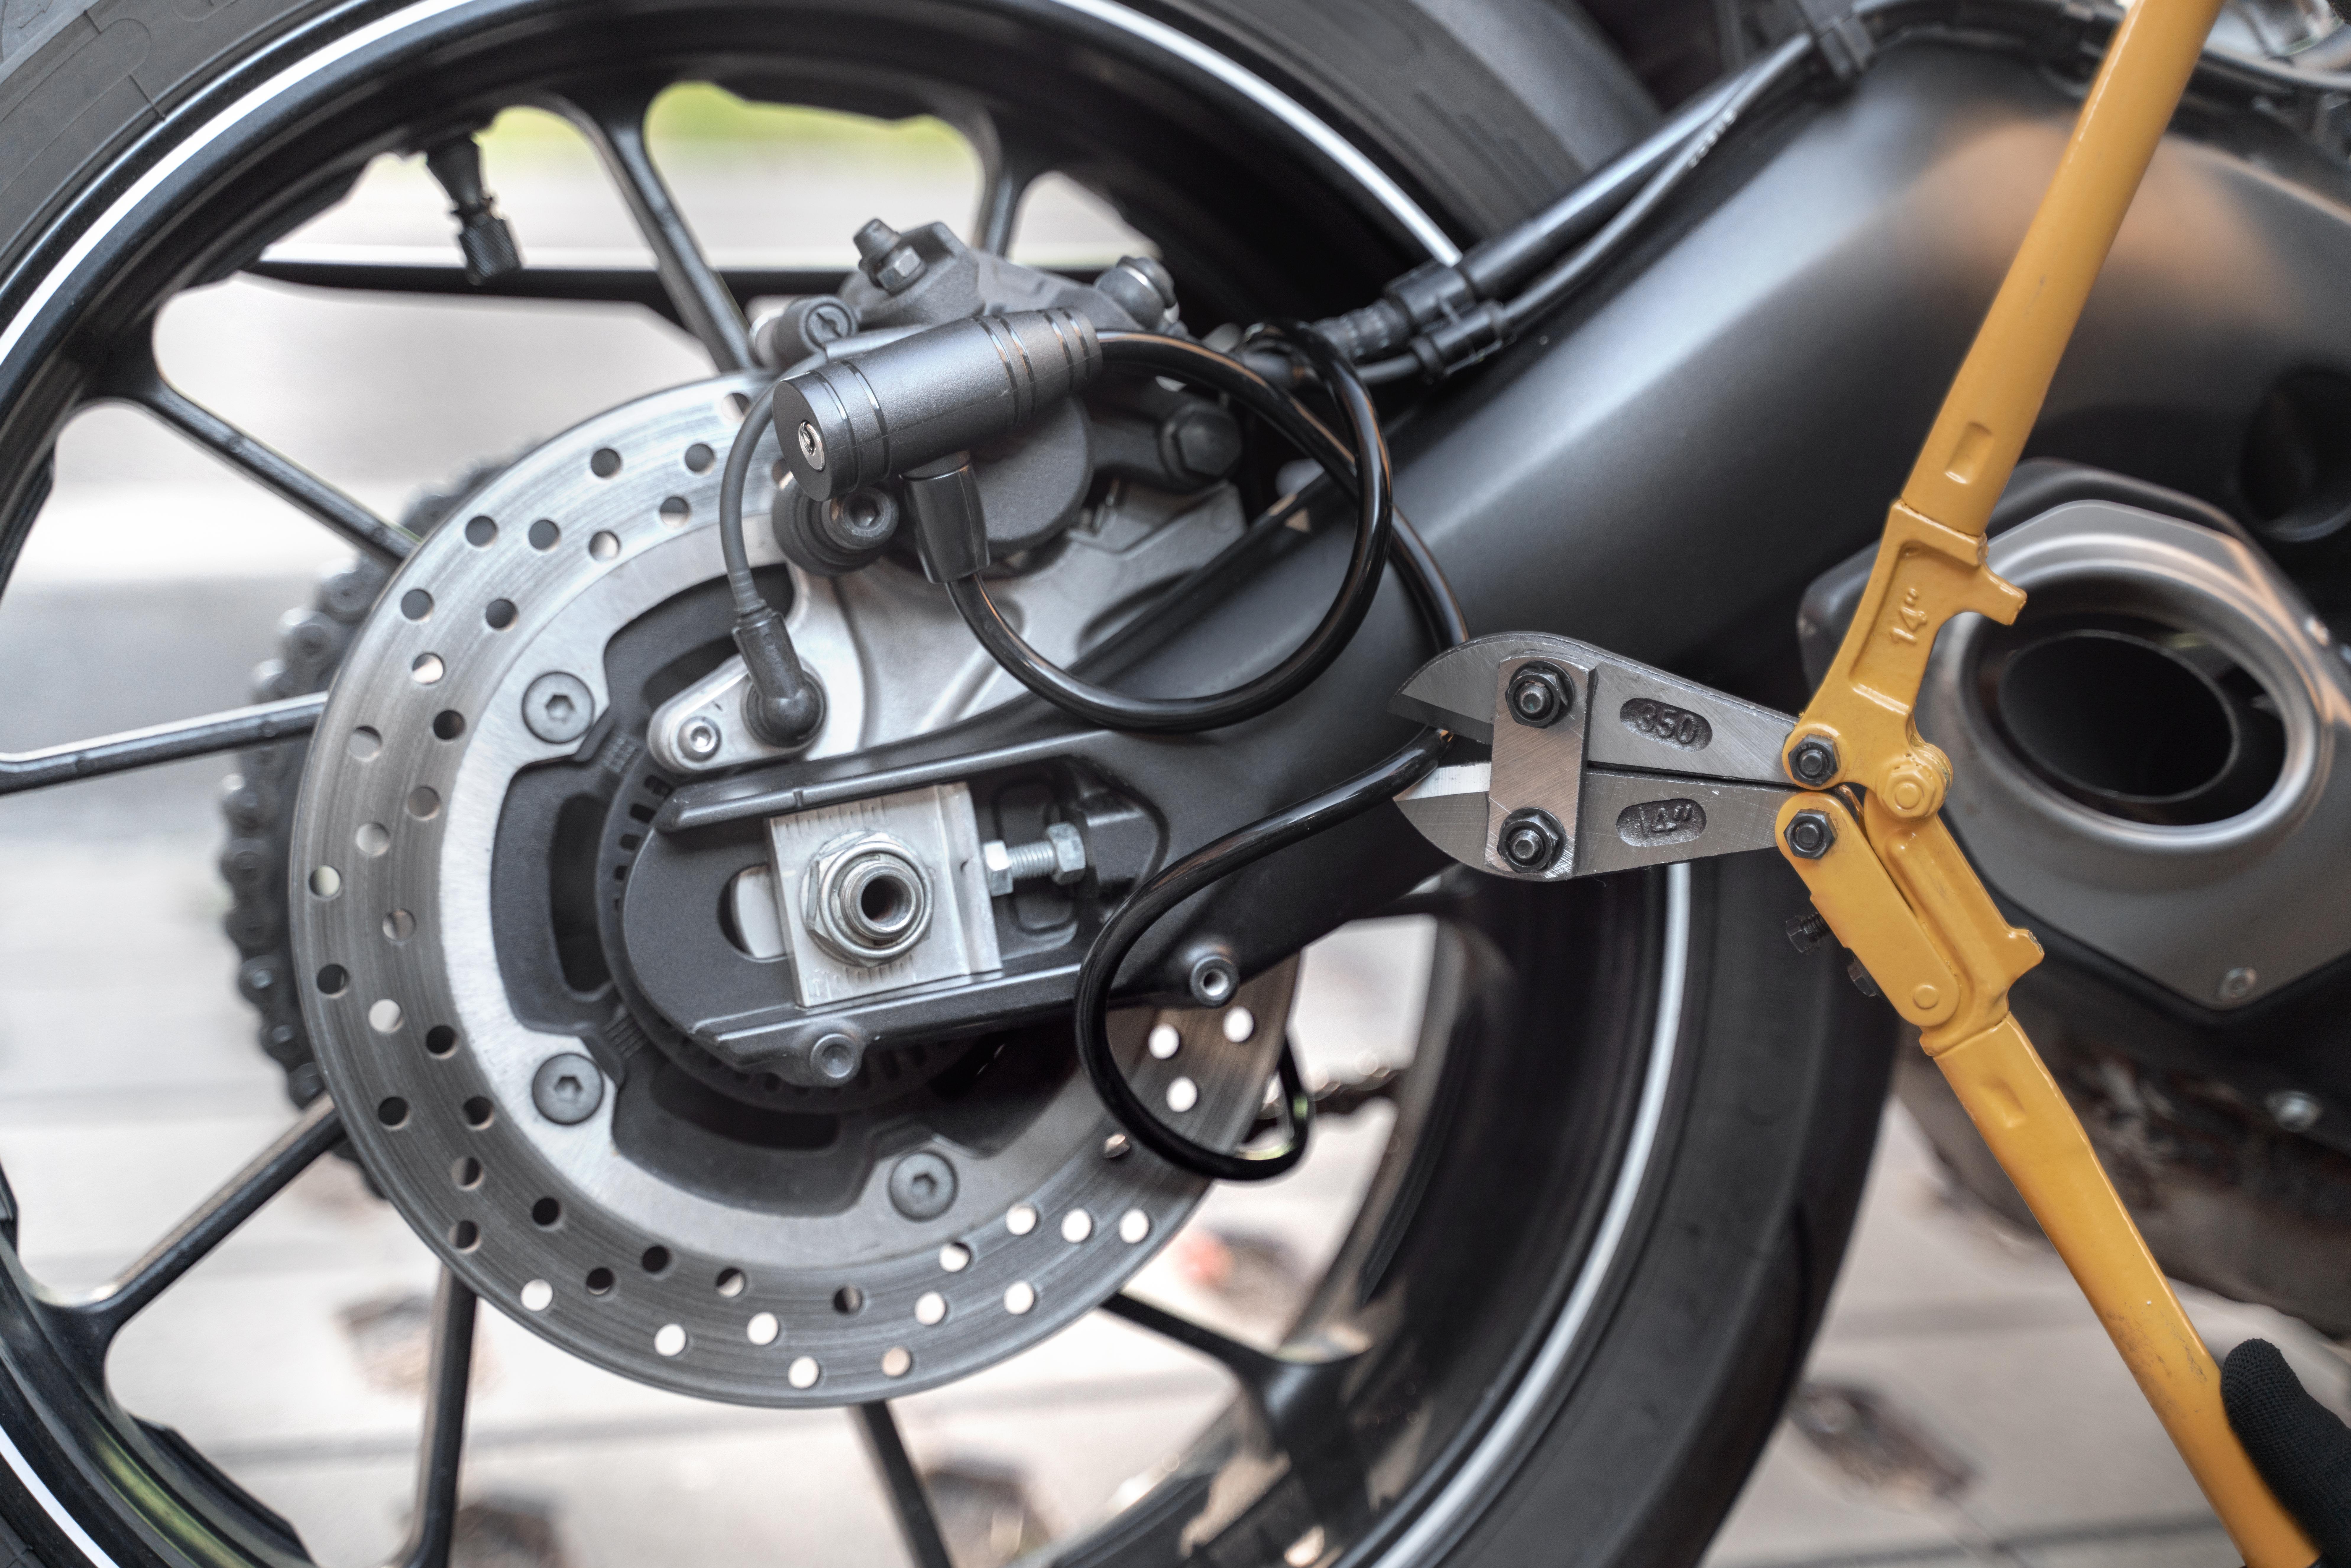 candados para moto candado de motos con Alarma antirrobo motocicleta seguro